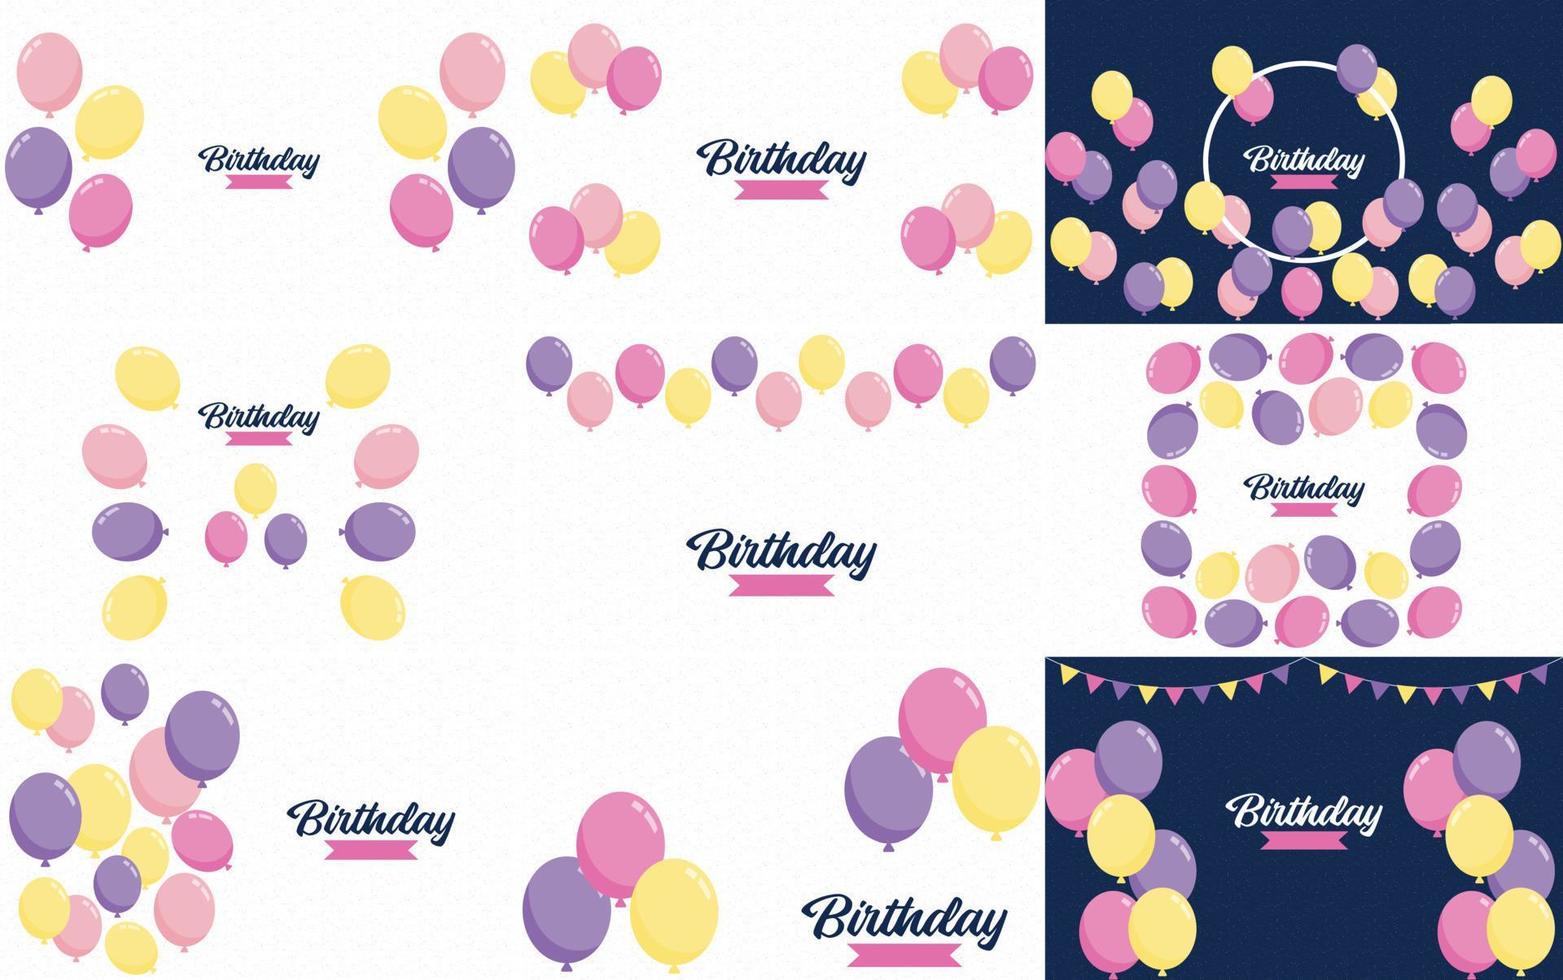 texto de feliz cumpleaños con un fondo estilo pizarra y elementos dibujados a mano como serpentinas y globos. vector